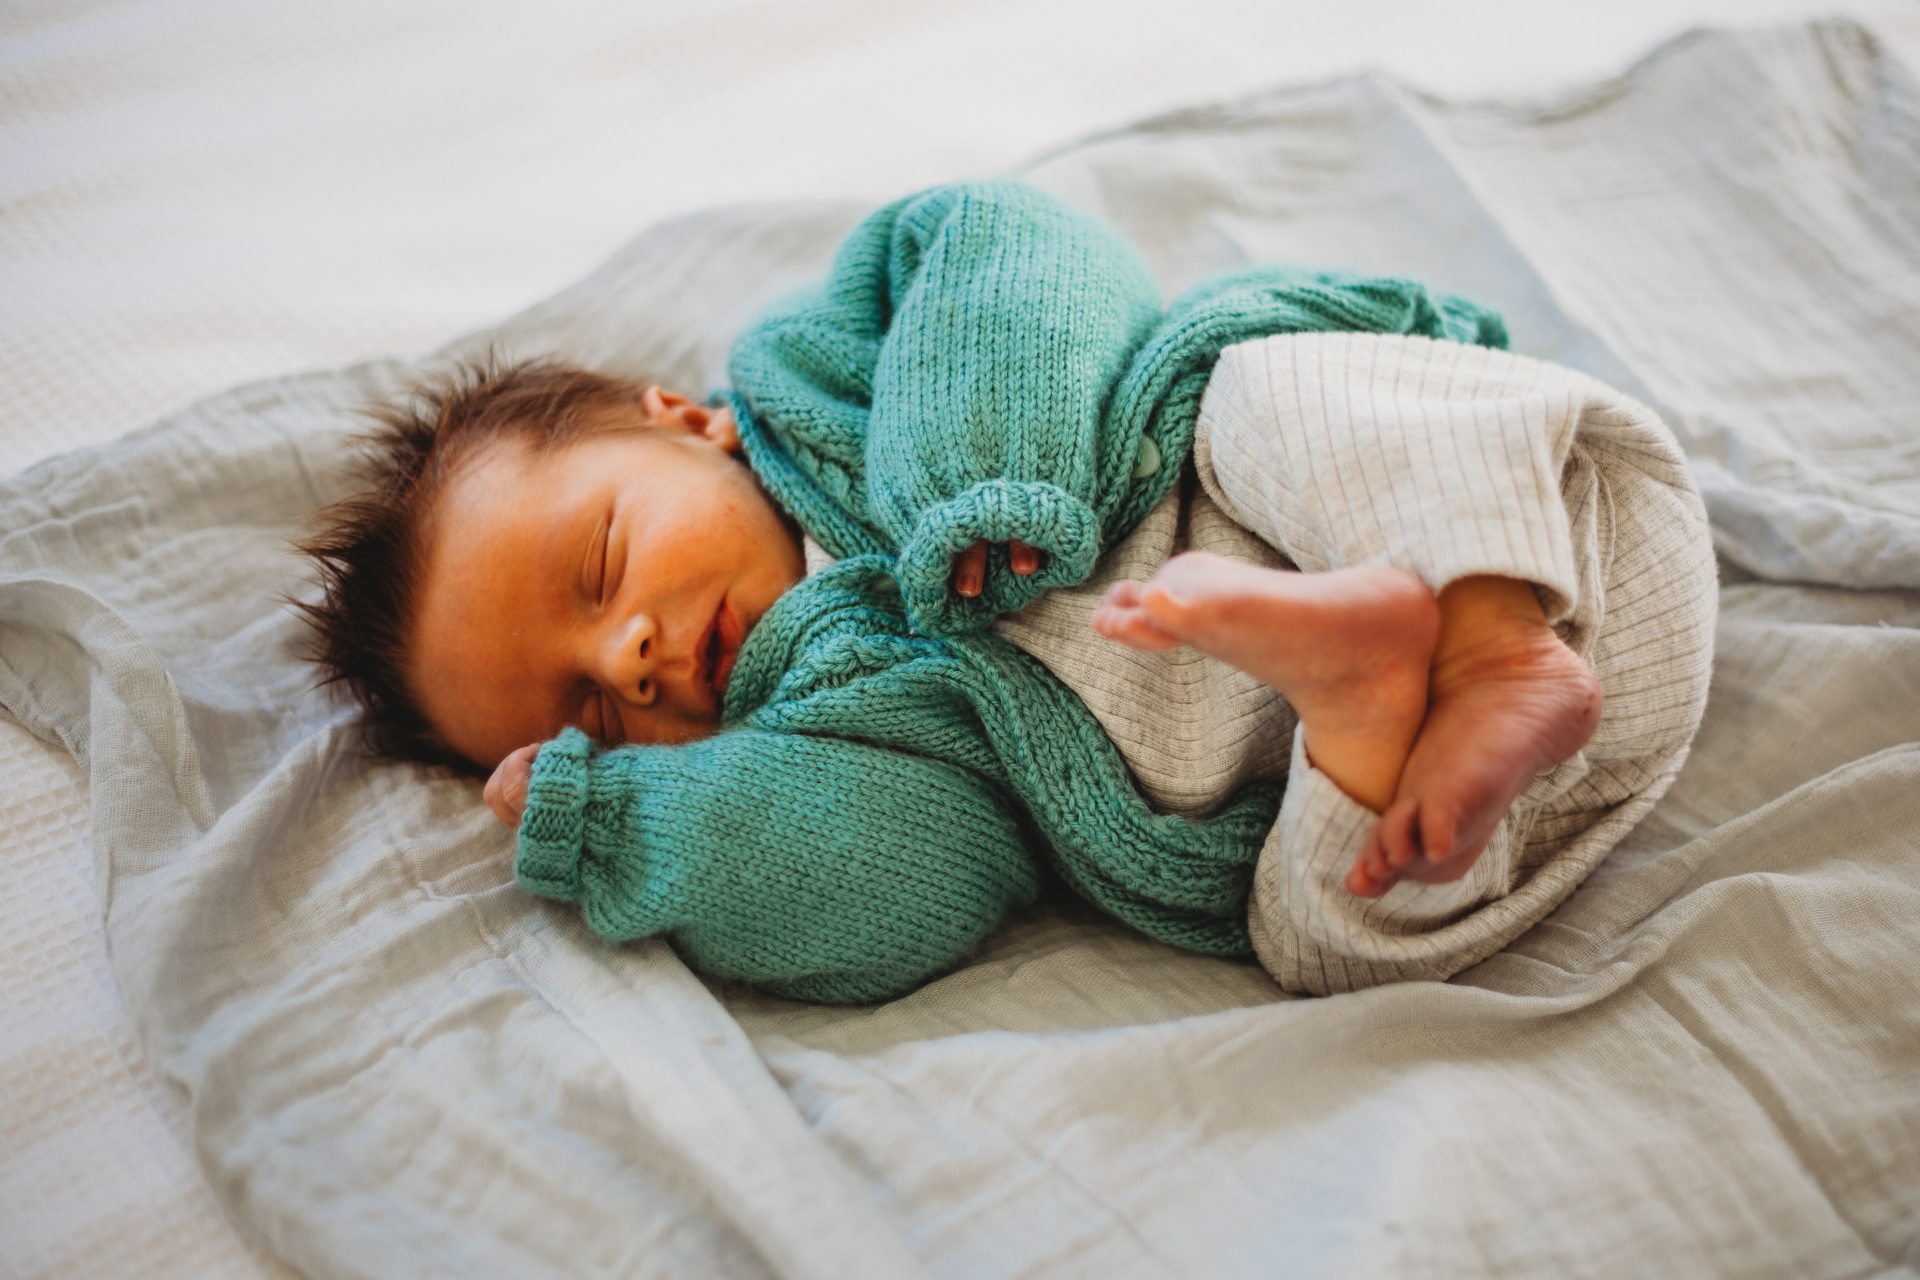 Sleeping newborn baby boy in green cardigan, laying on a grey wrap on a bed